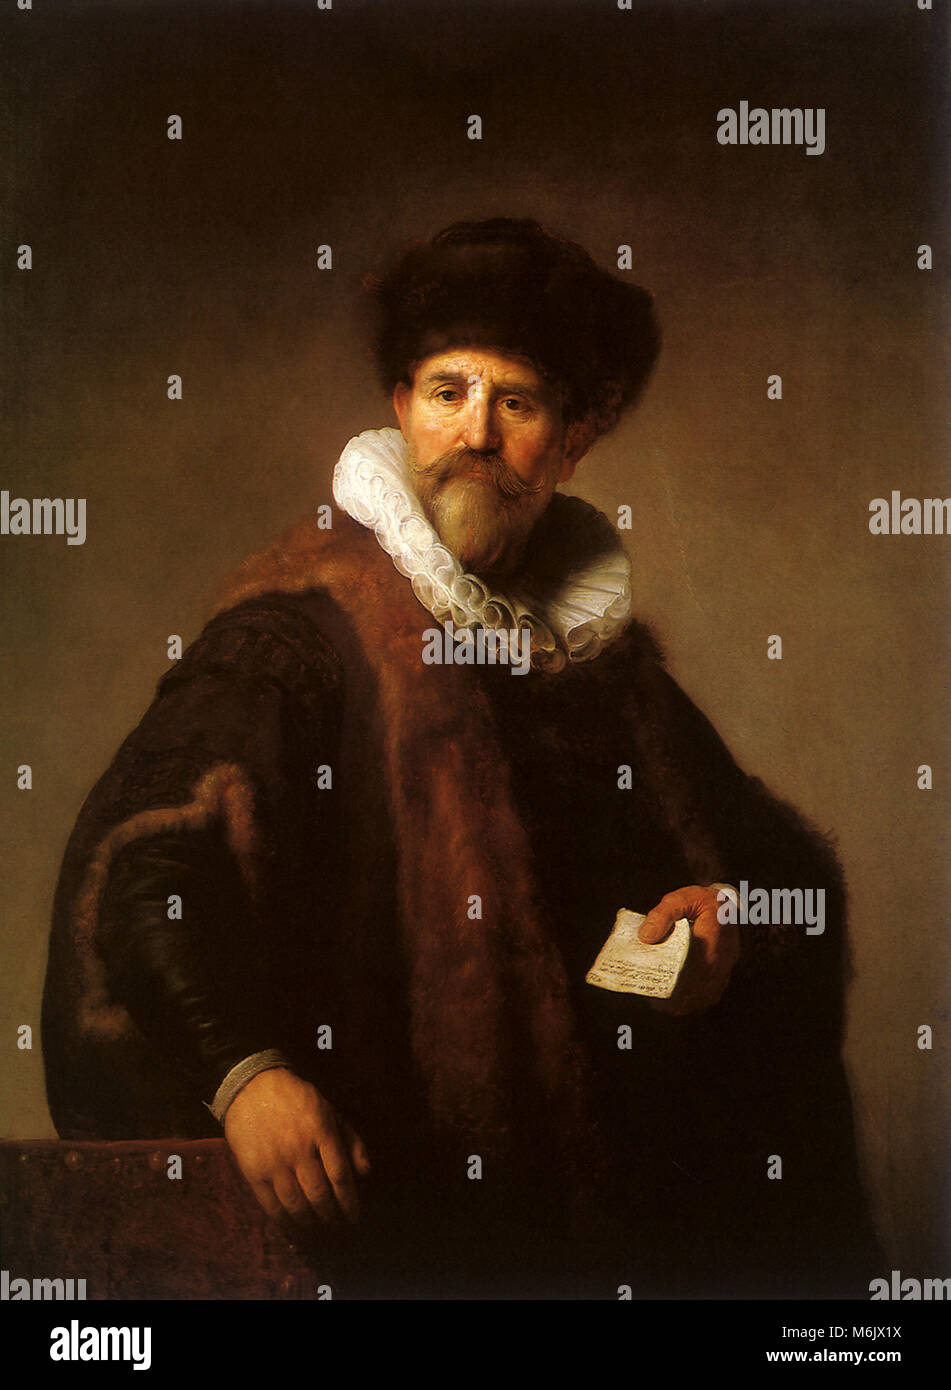 Nicolaes Ruts, Rembrandt, Harmensz van Rijn, 1631. Stock Photo